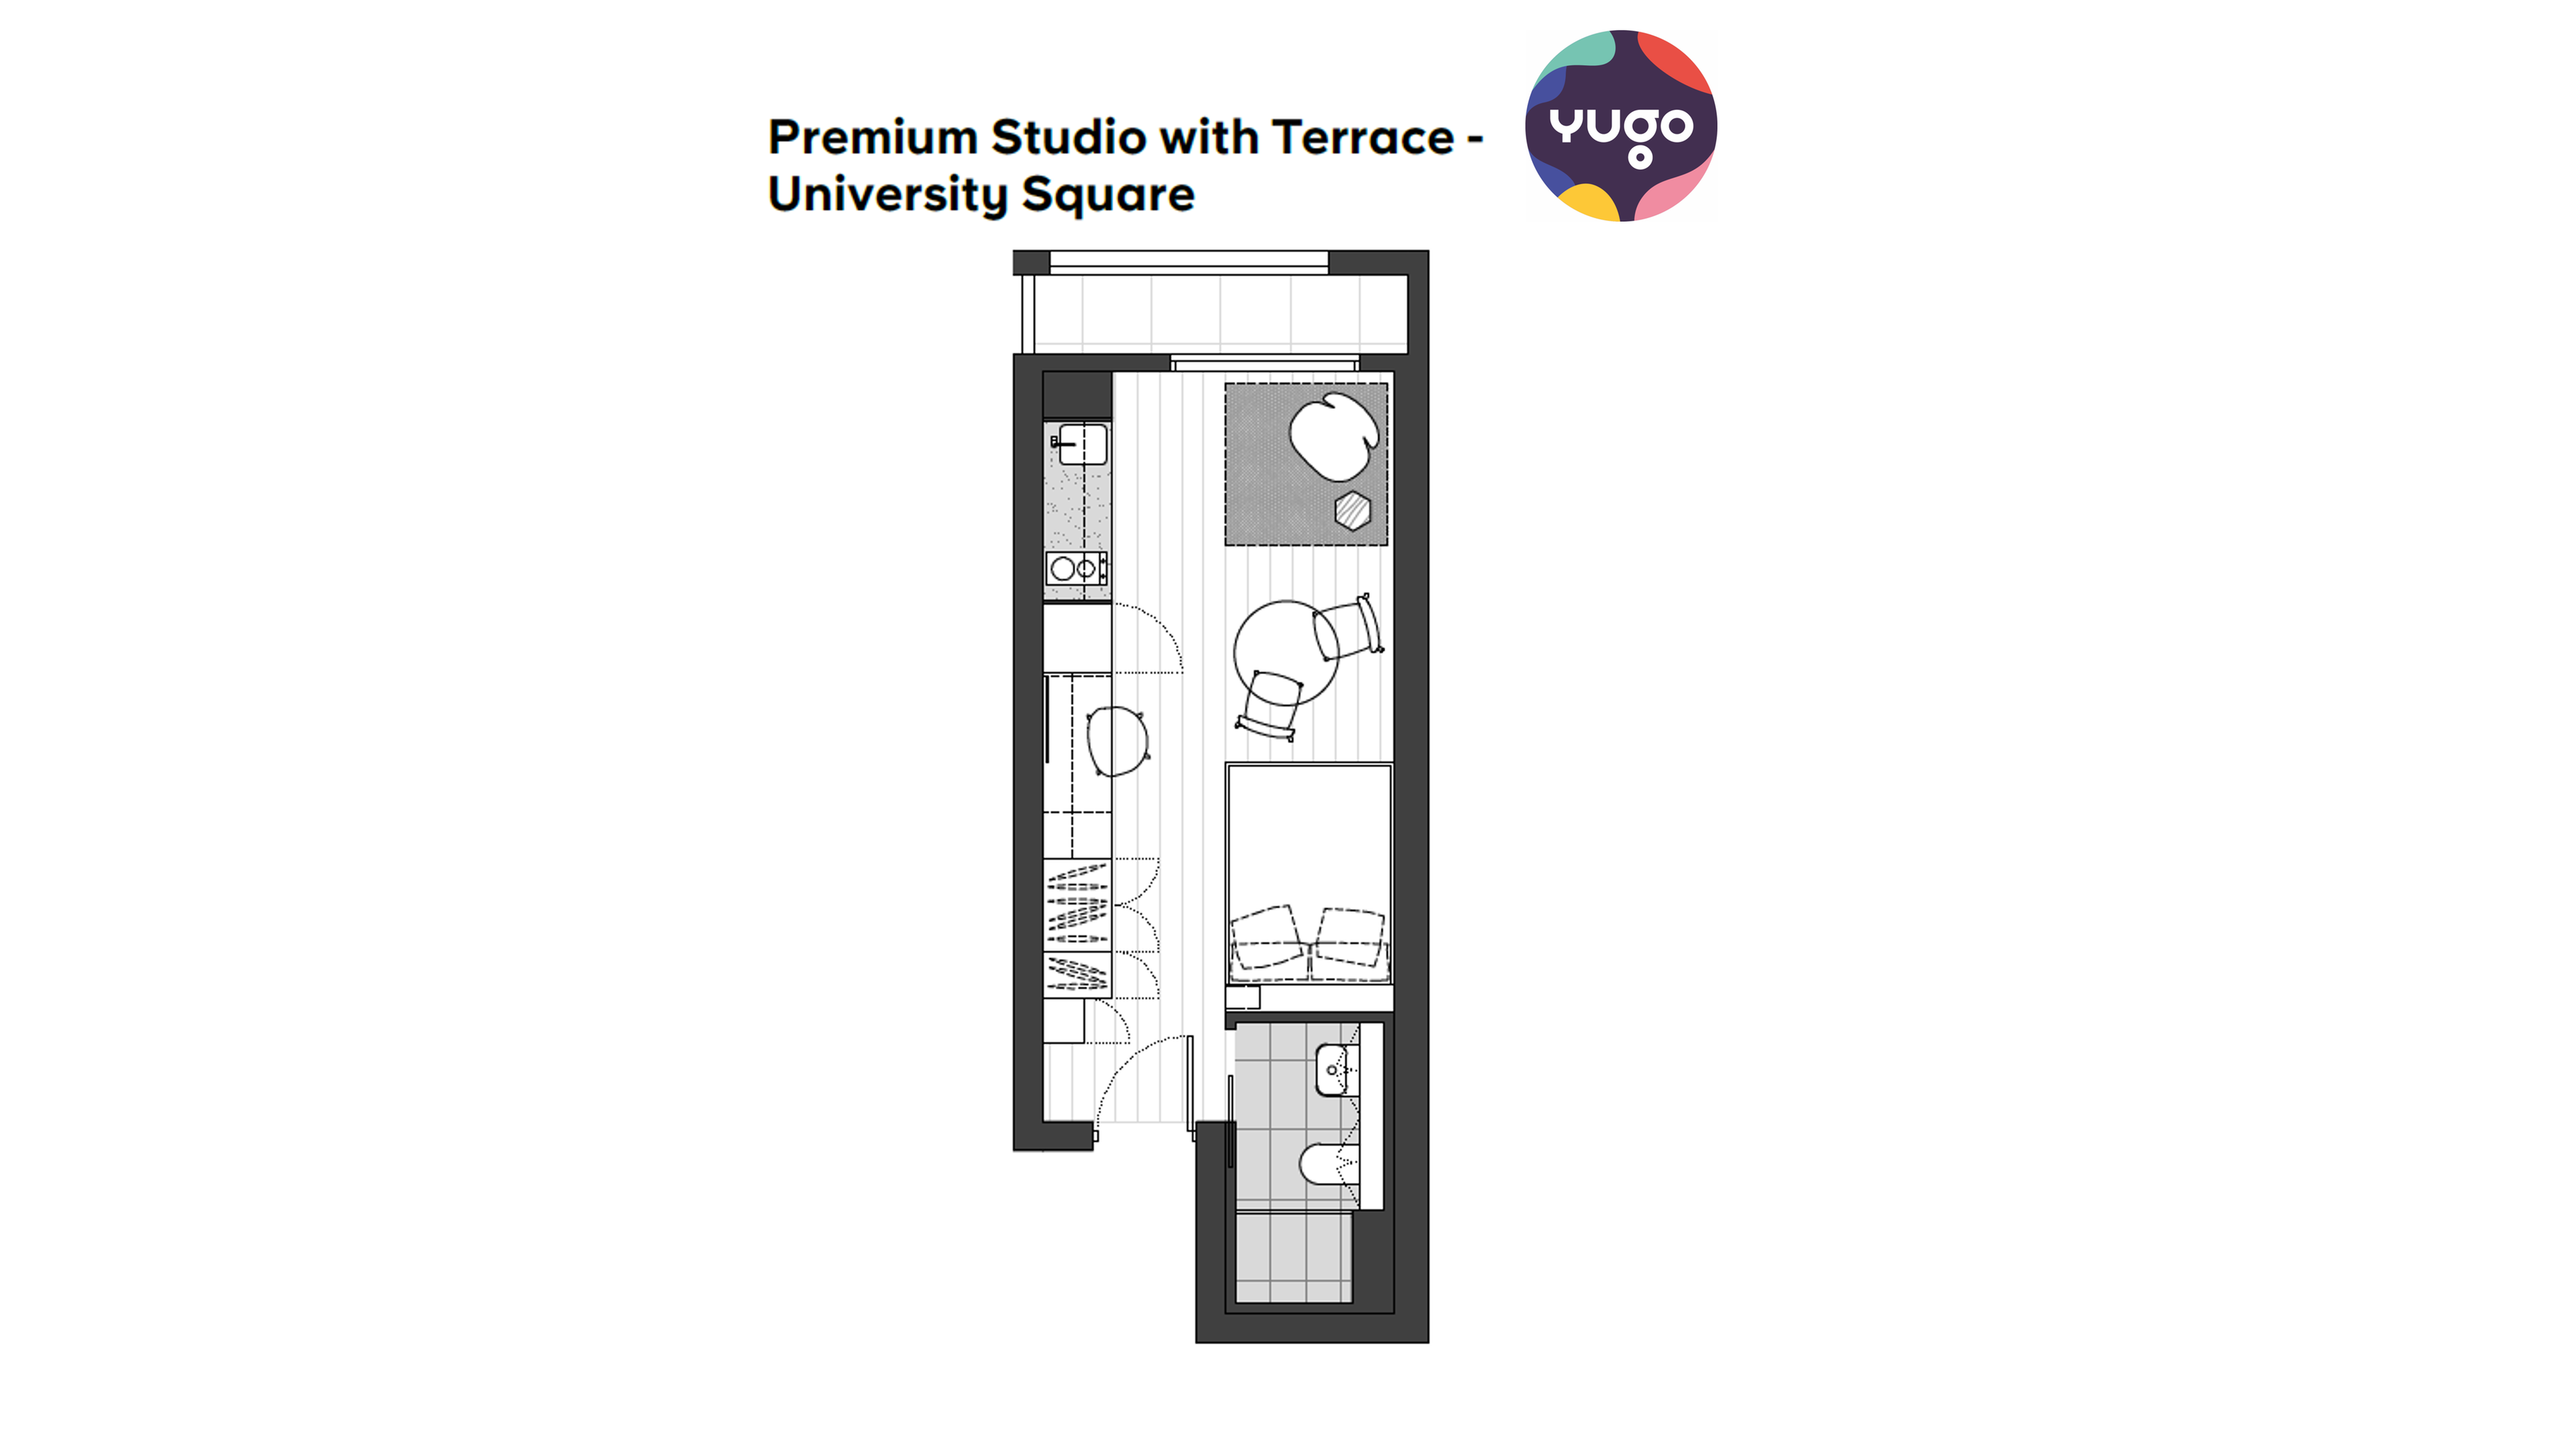 Premium Studio with T image (1)